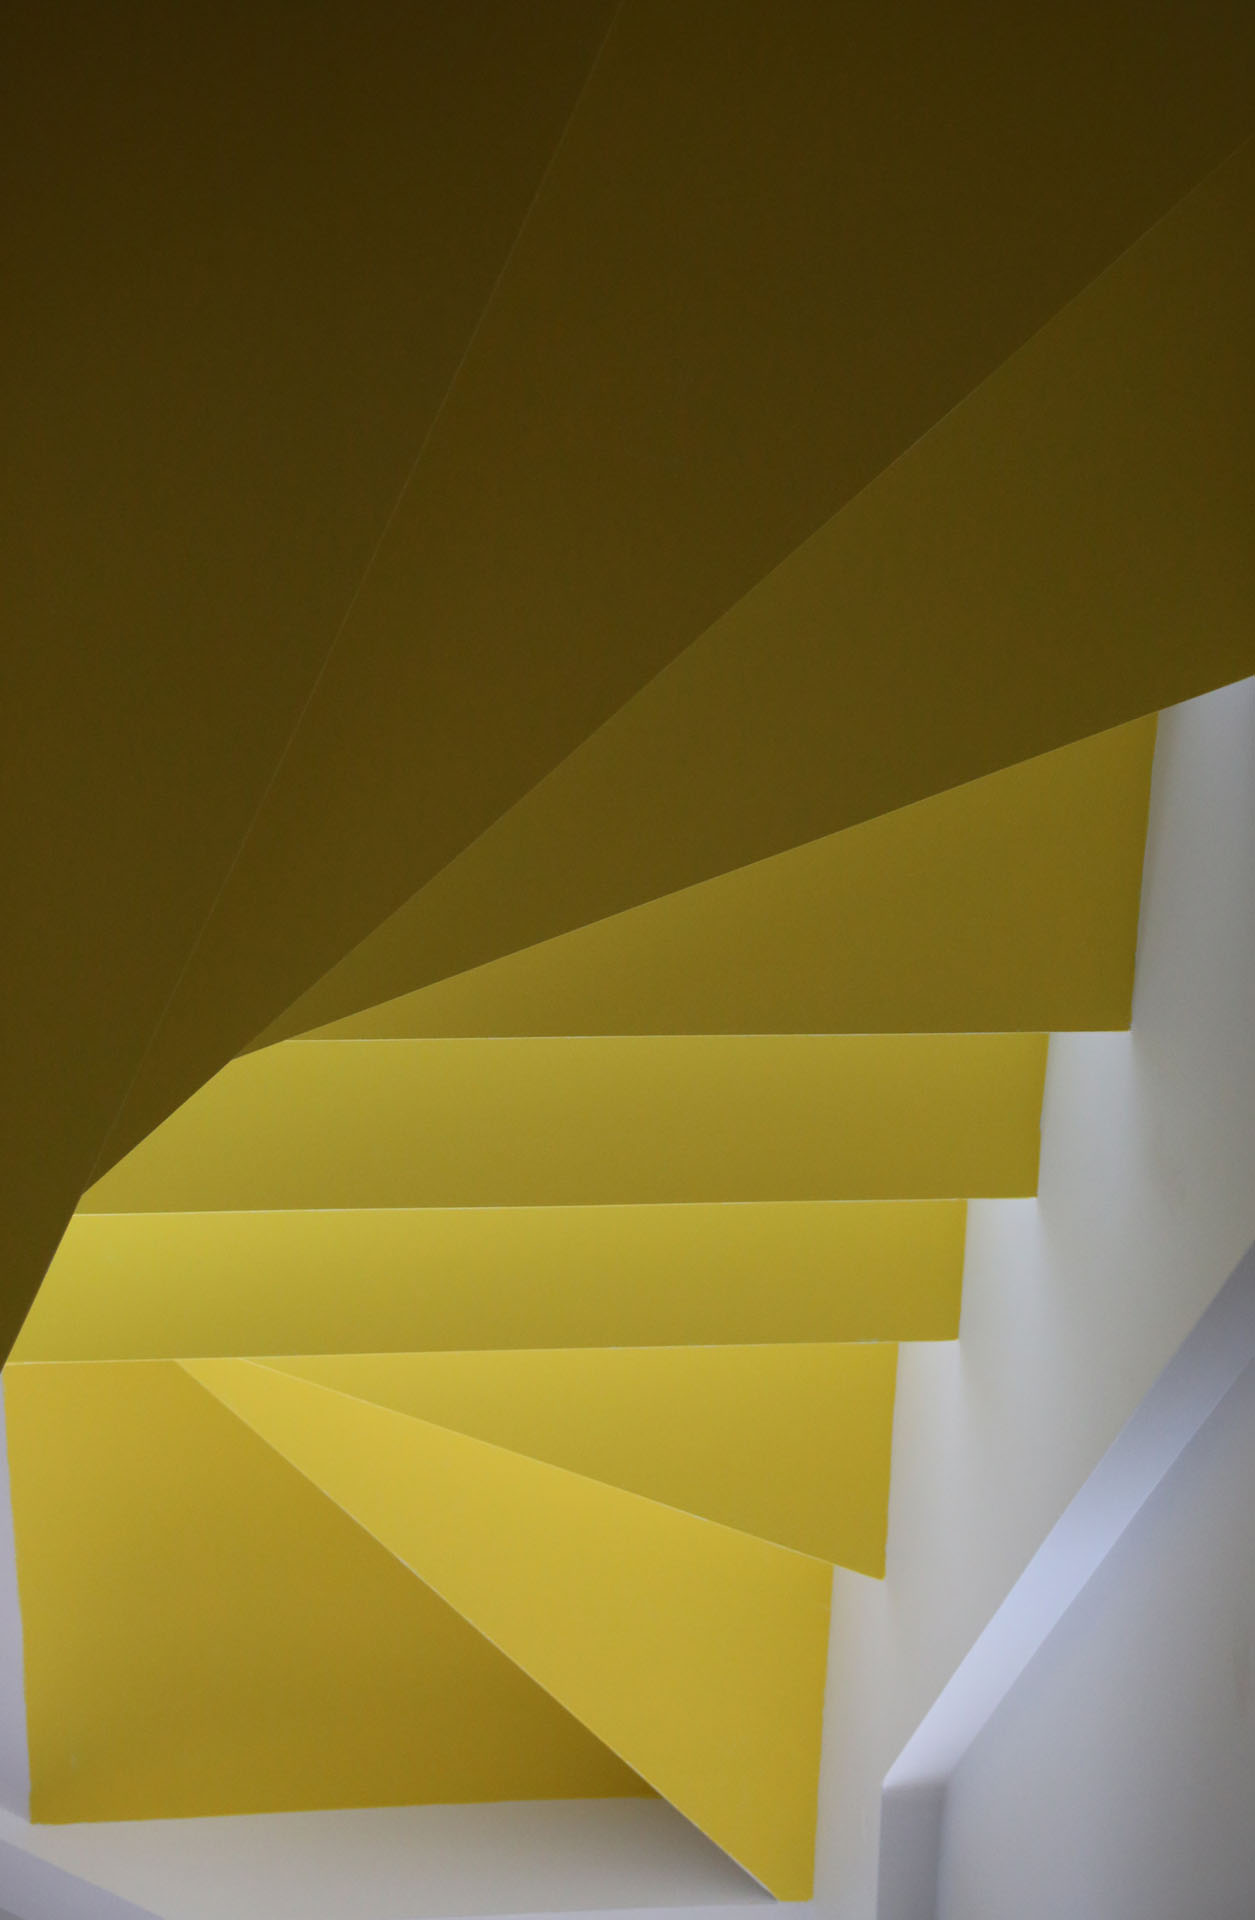 Das Bild betrachte von unten den Aufstieg einer Treppe und illustriert farbig die rechte Seite der Startseite von buerotezett • konzept und redaktion, Anke Thomsen-Askanazy, Koeln.